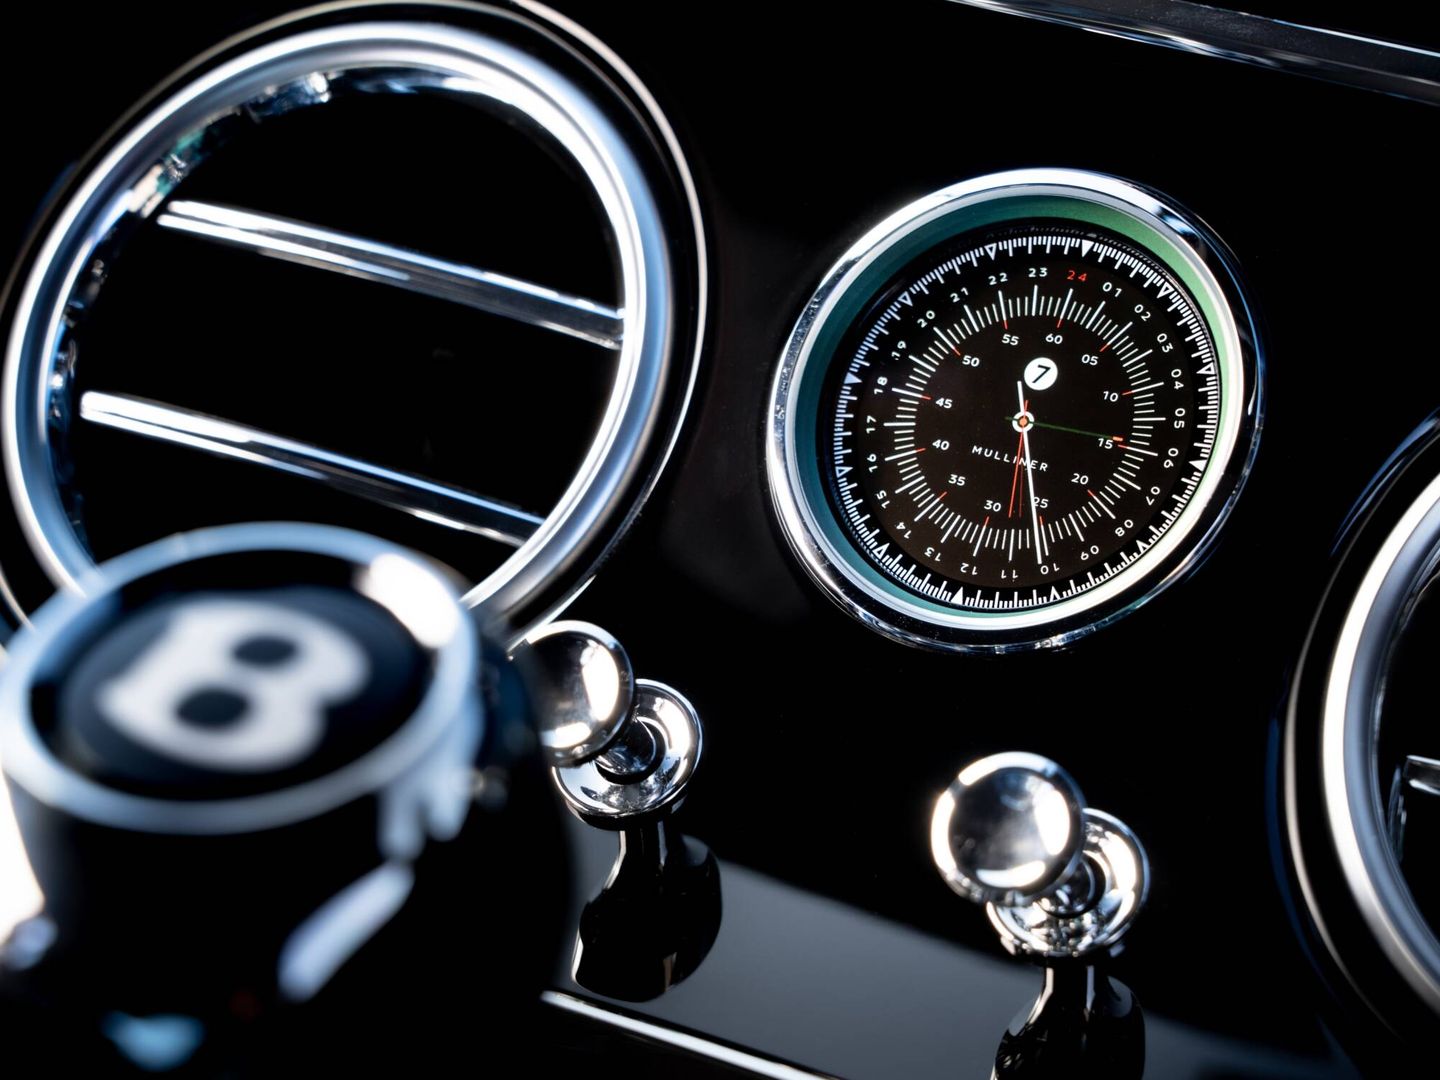 El reloj habitual en la gama Continental se sustituye por uno específico, de 24 horas.